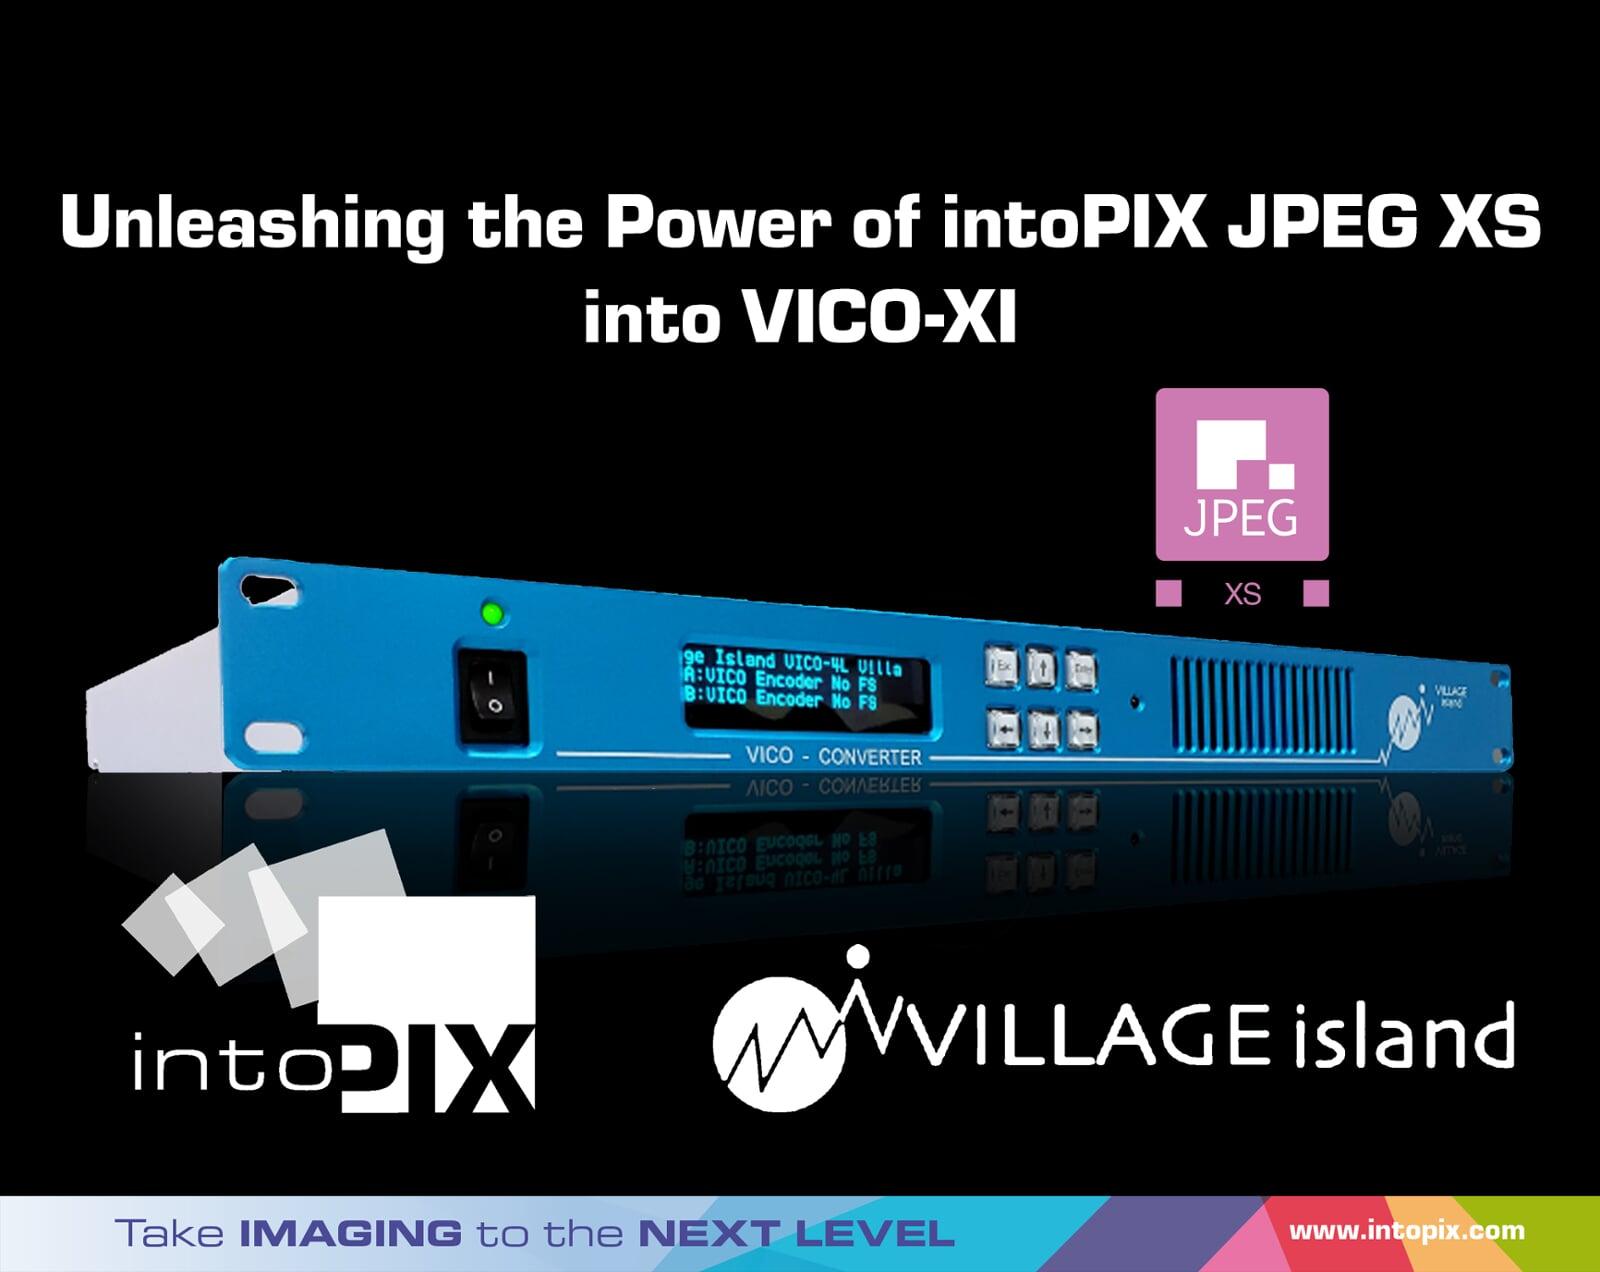 Village Island VICO-XI révolutionne la conversion vidéo IP avec une bande passante réduite et une latence de quelques microsecondes grâce à la technologie intoPIX .